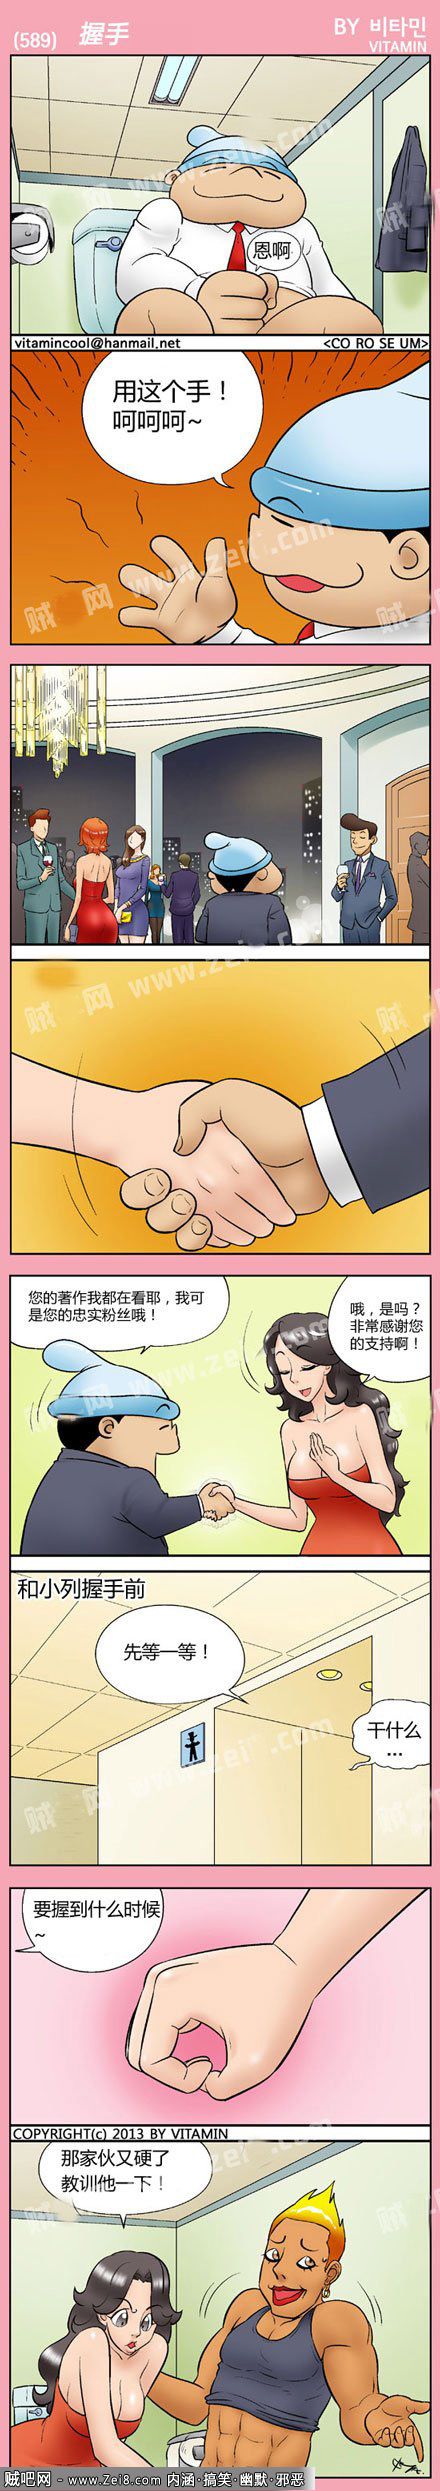 [色系军团搞笑漫画连载]：握手的对象